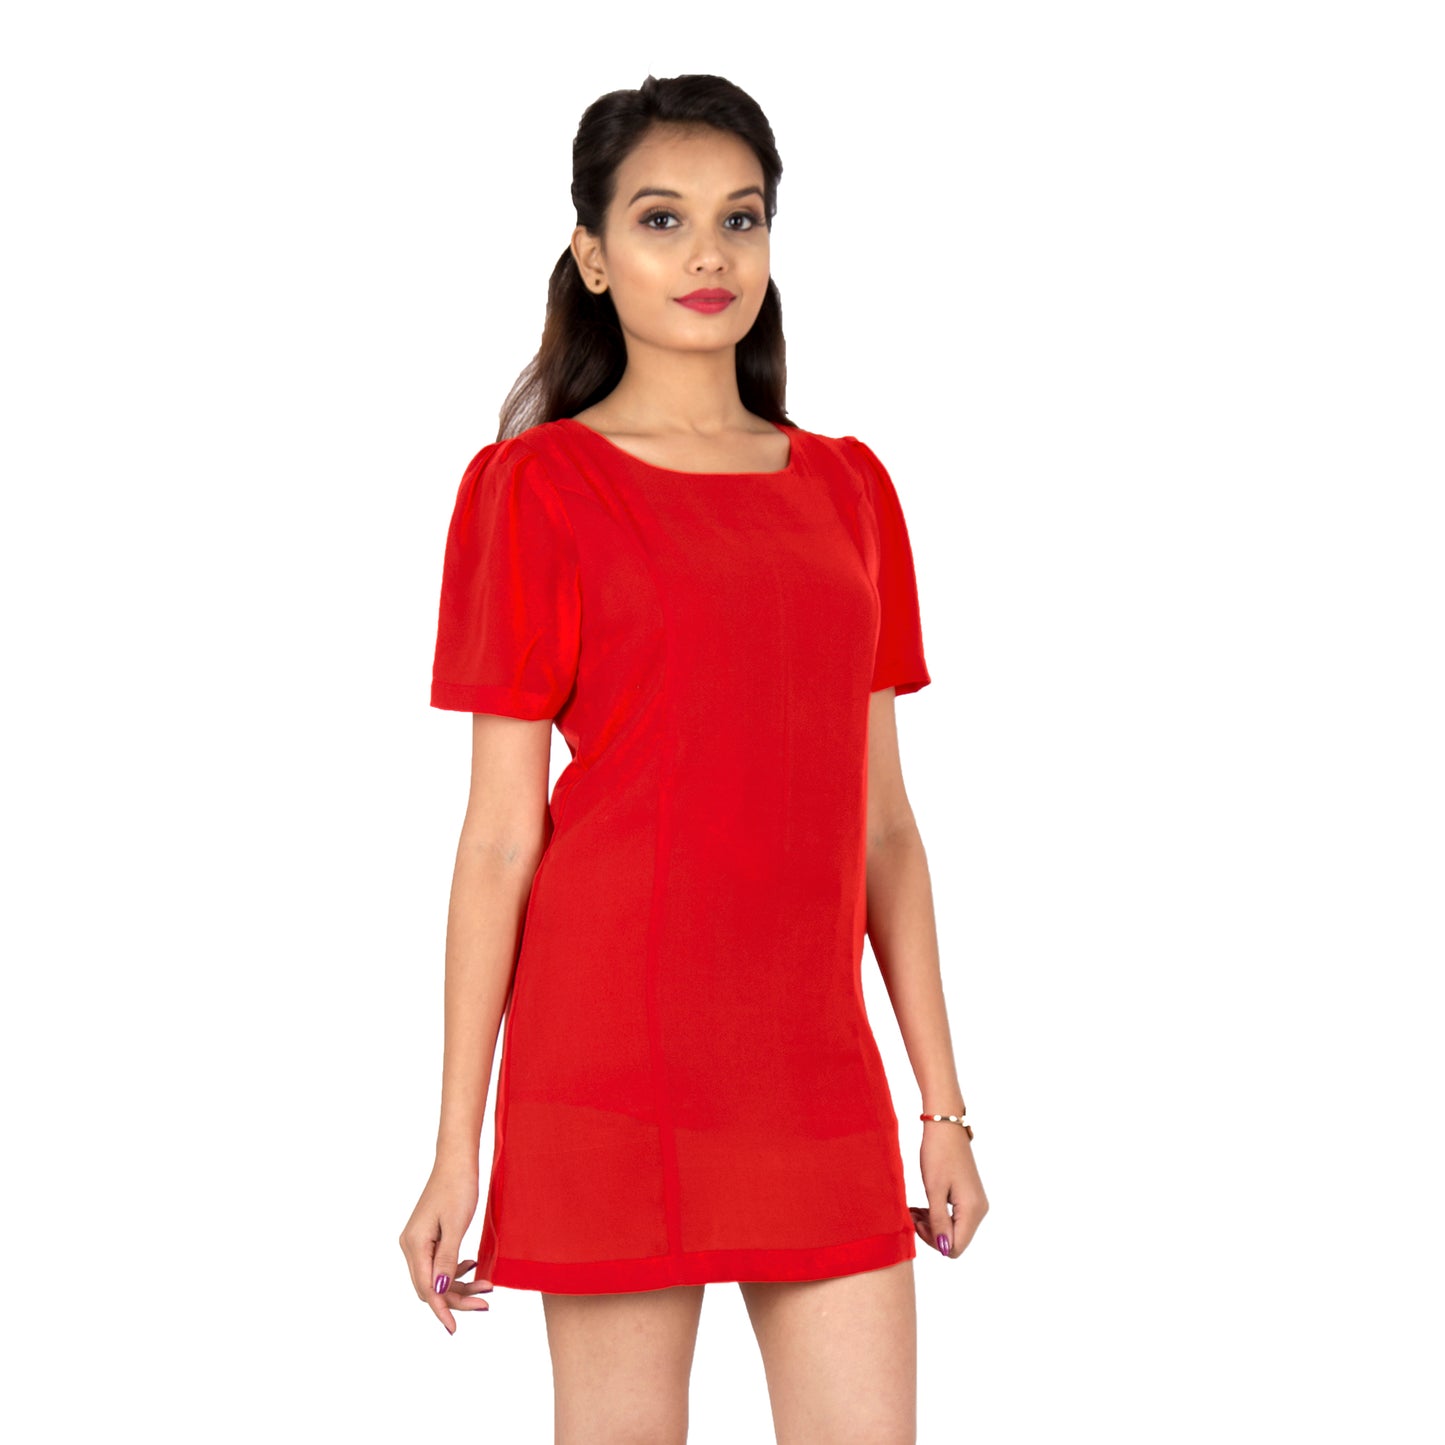 short-red-dress-for-women-online